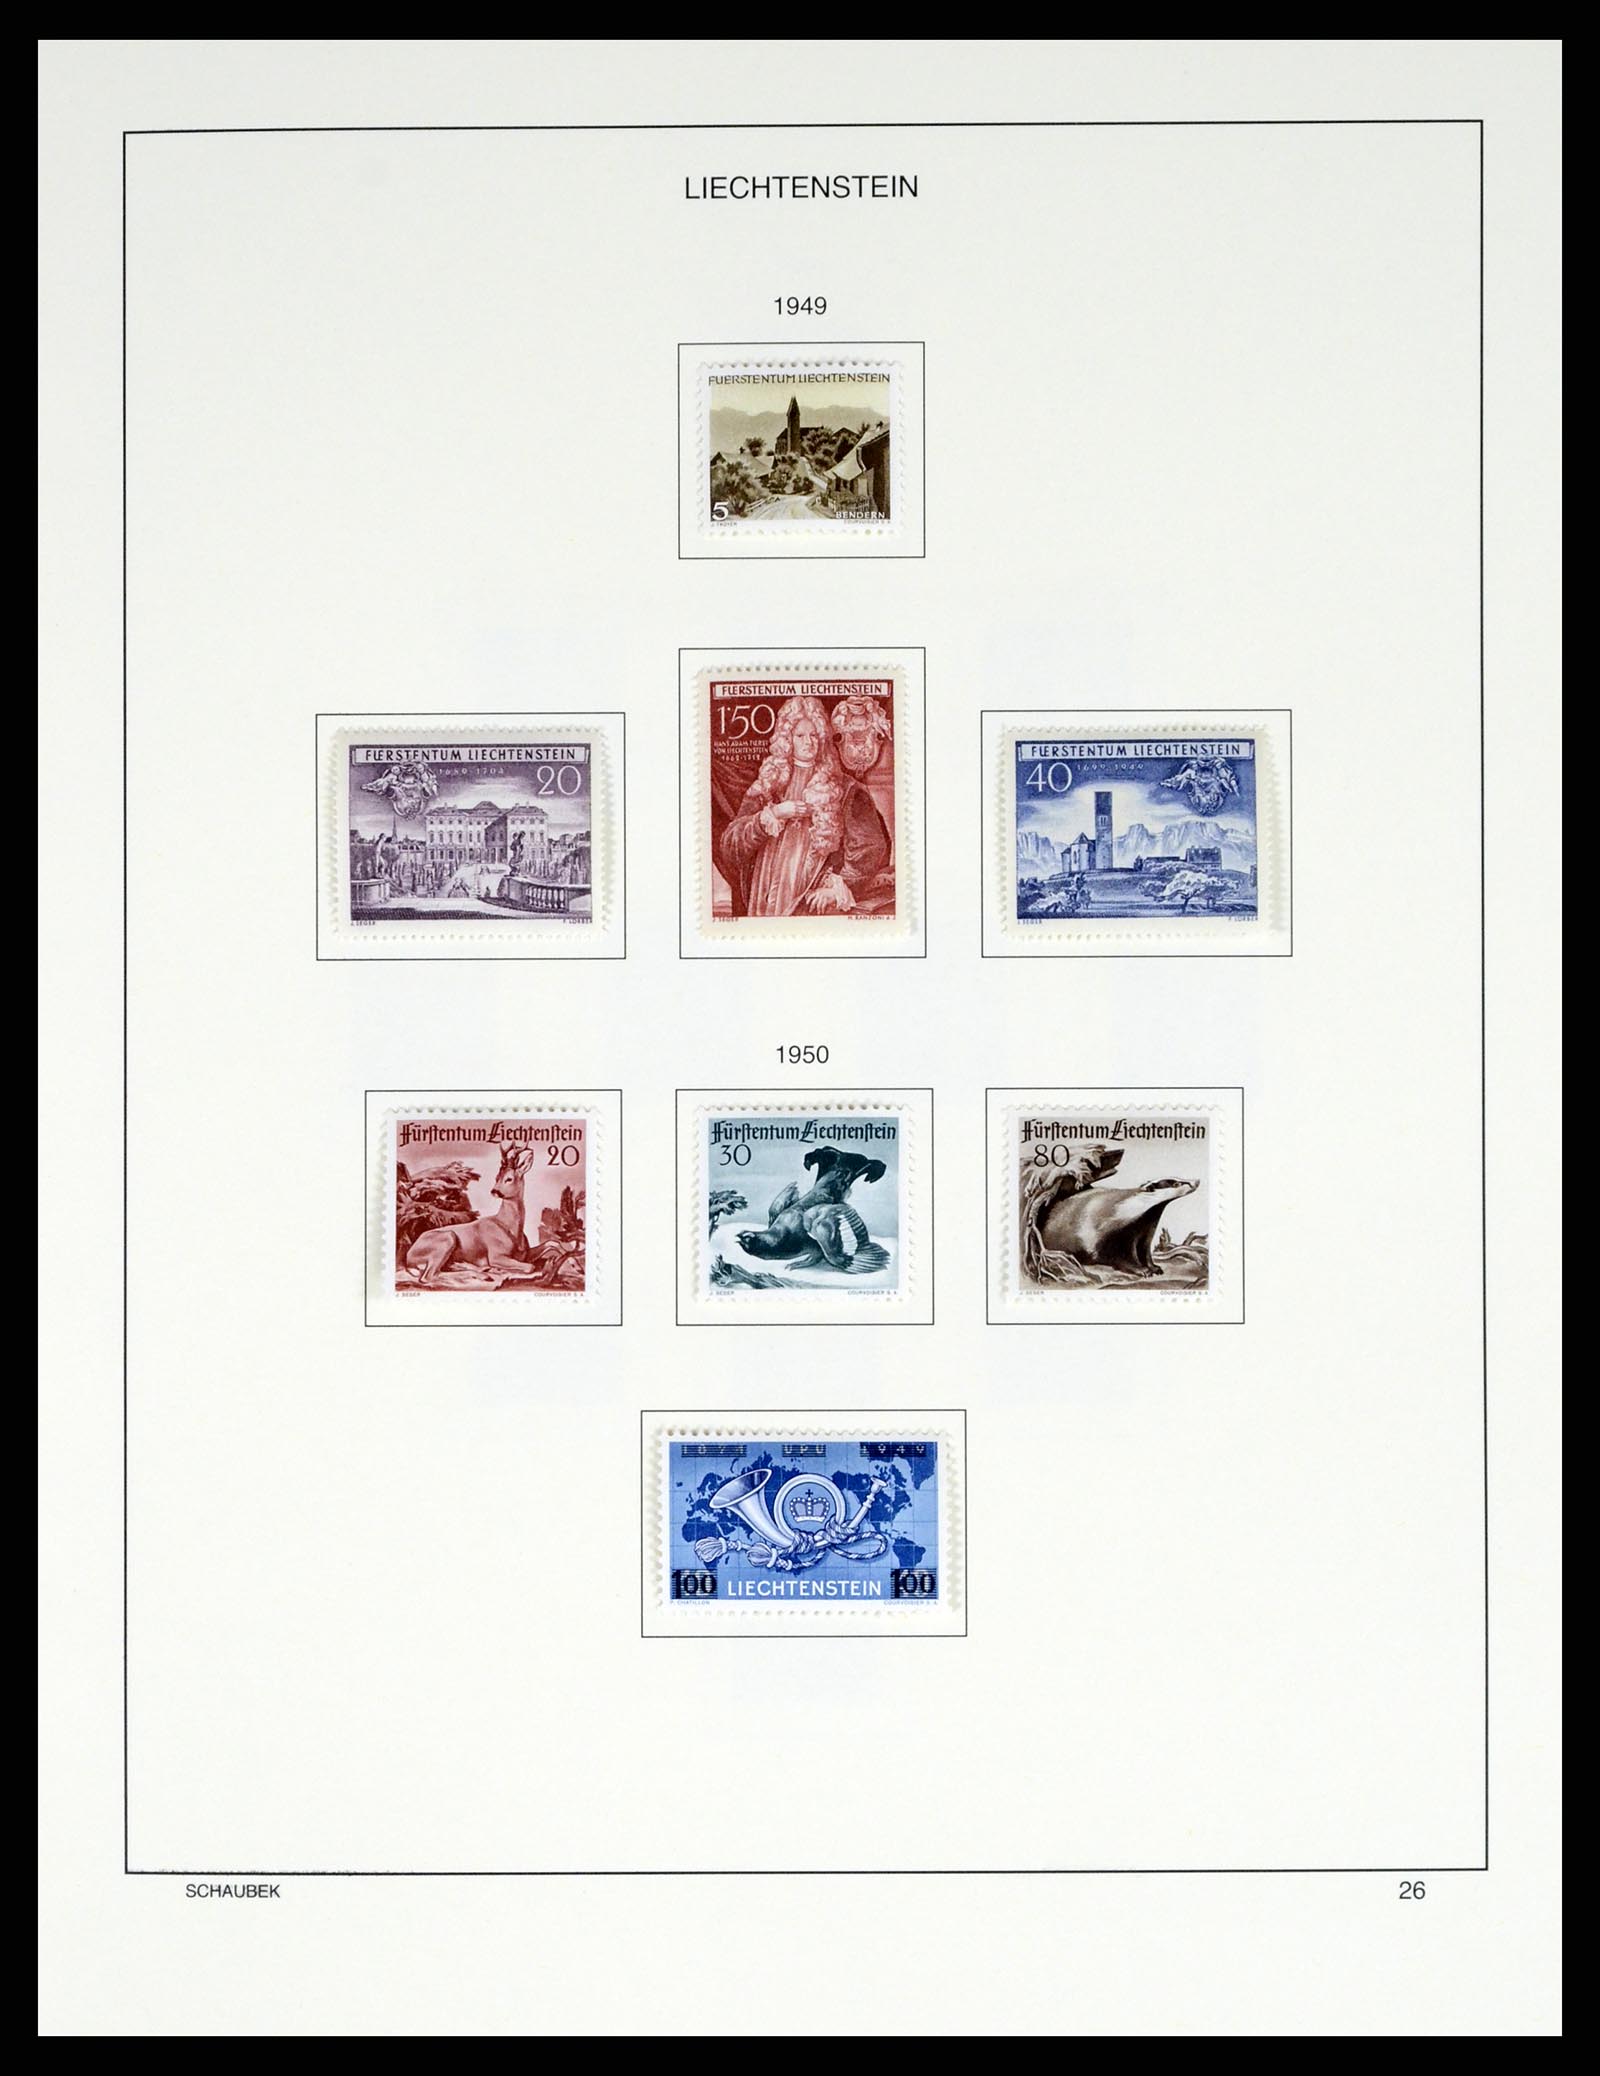 37547 031 - Stamp collection 37547 Liechtenstein 1912-2011.